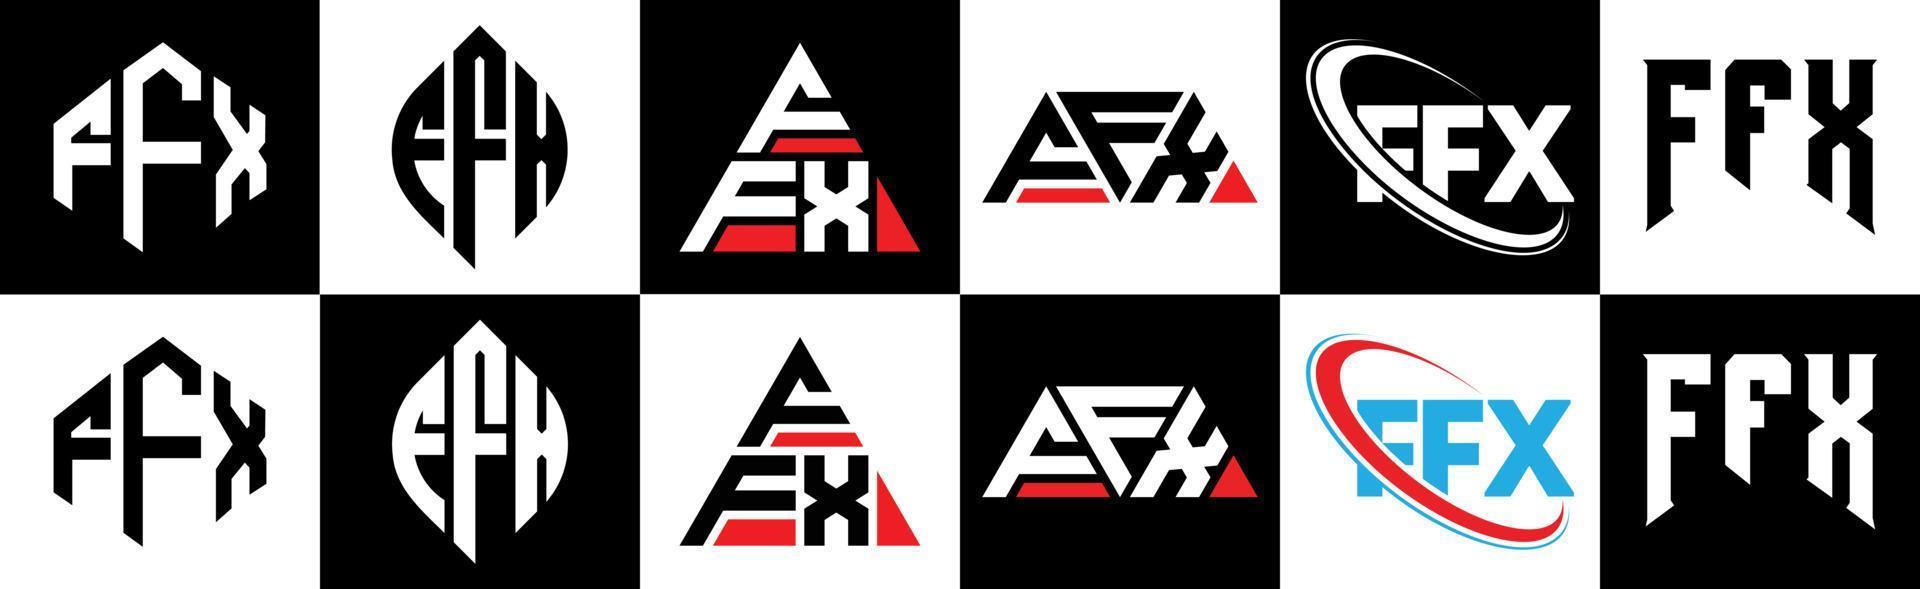 ffx-Buchstaben-Logo-Design in sechs Stilen. ffx Polygon, Kreis, Dreieck, Sechseck, flacher und einfacher Stil mit schwarz-weißem Buchstabenlogo in einer Zeichenfläche. ffx minimalistisches und klassisches Logo vektor